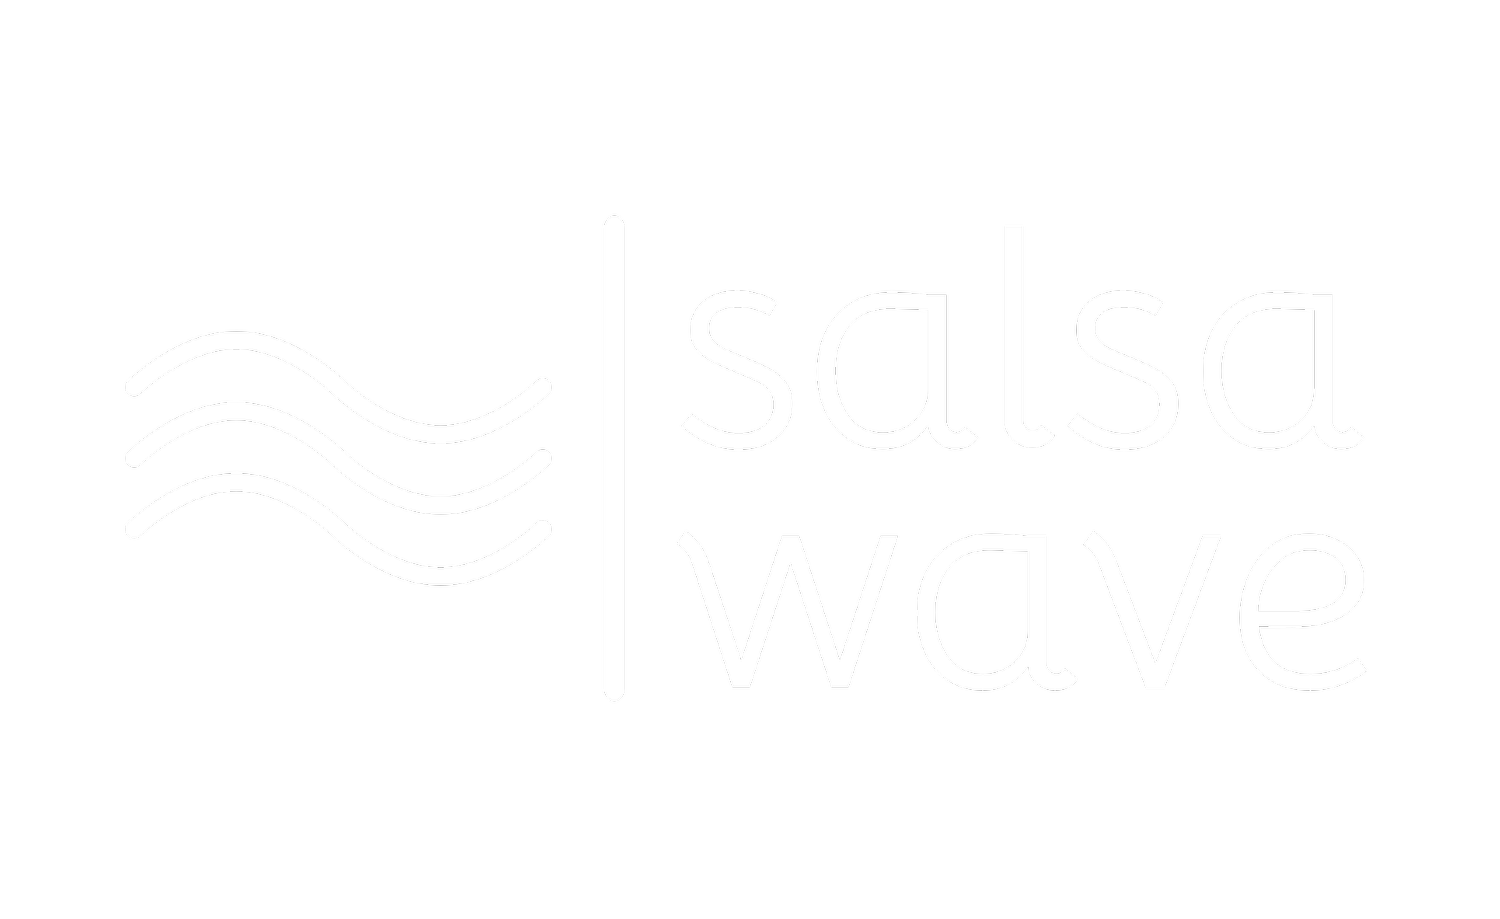 http://salsawave.com/